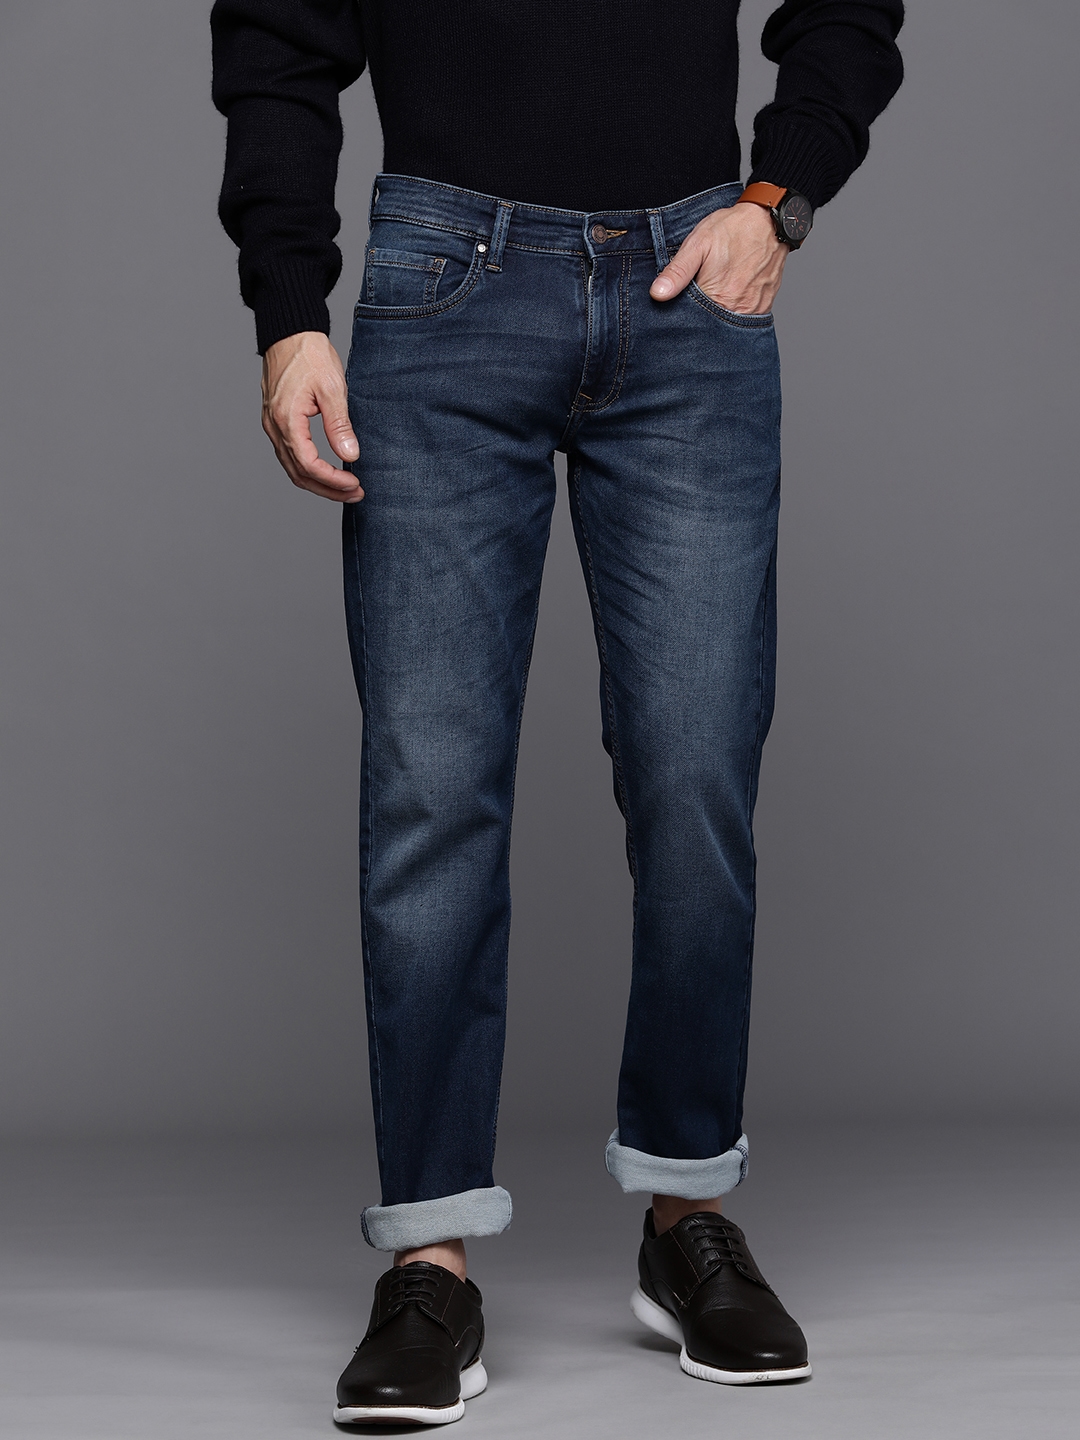 Buy Men Navy Dark Wash Low Skinny Fit Jeans Online - 755771 | Peter England-lmd.edu.vn